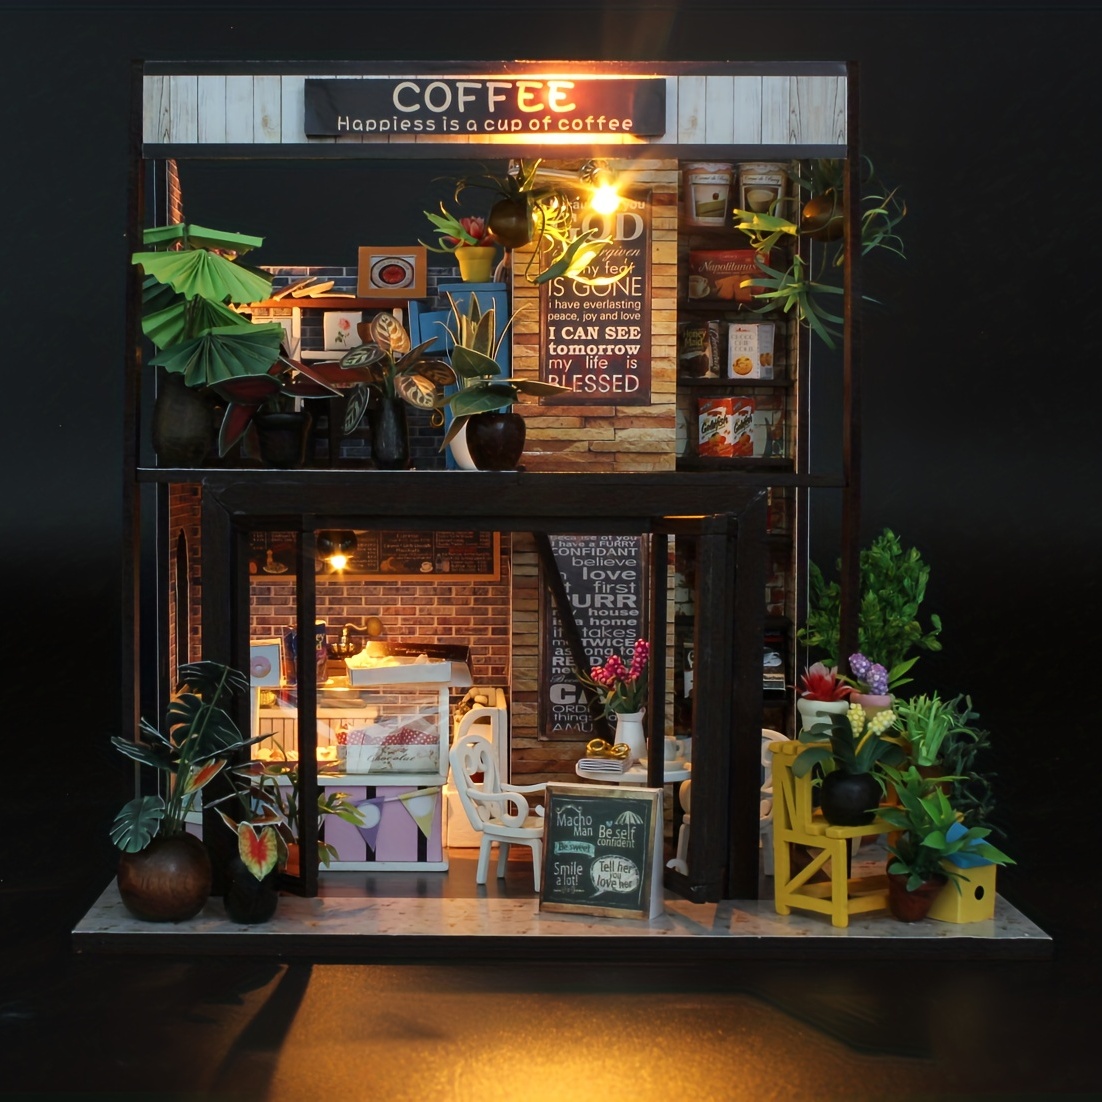 1PCS 1/6 Scale Cute Mini Coffee Machine Model Miniature Dollhouse